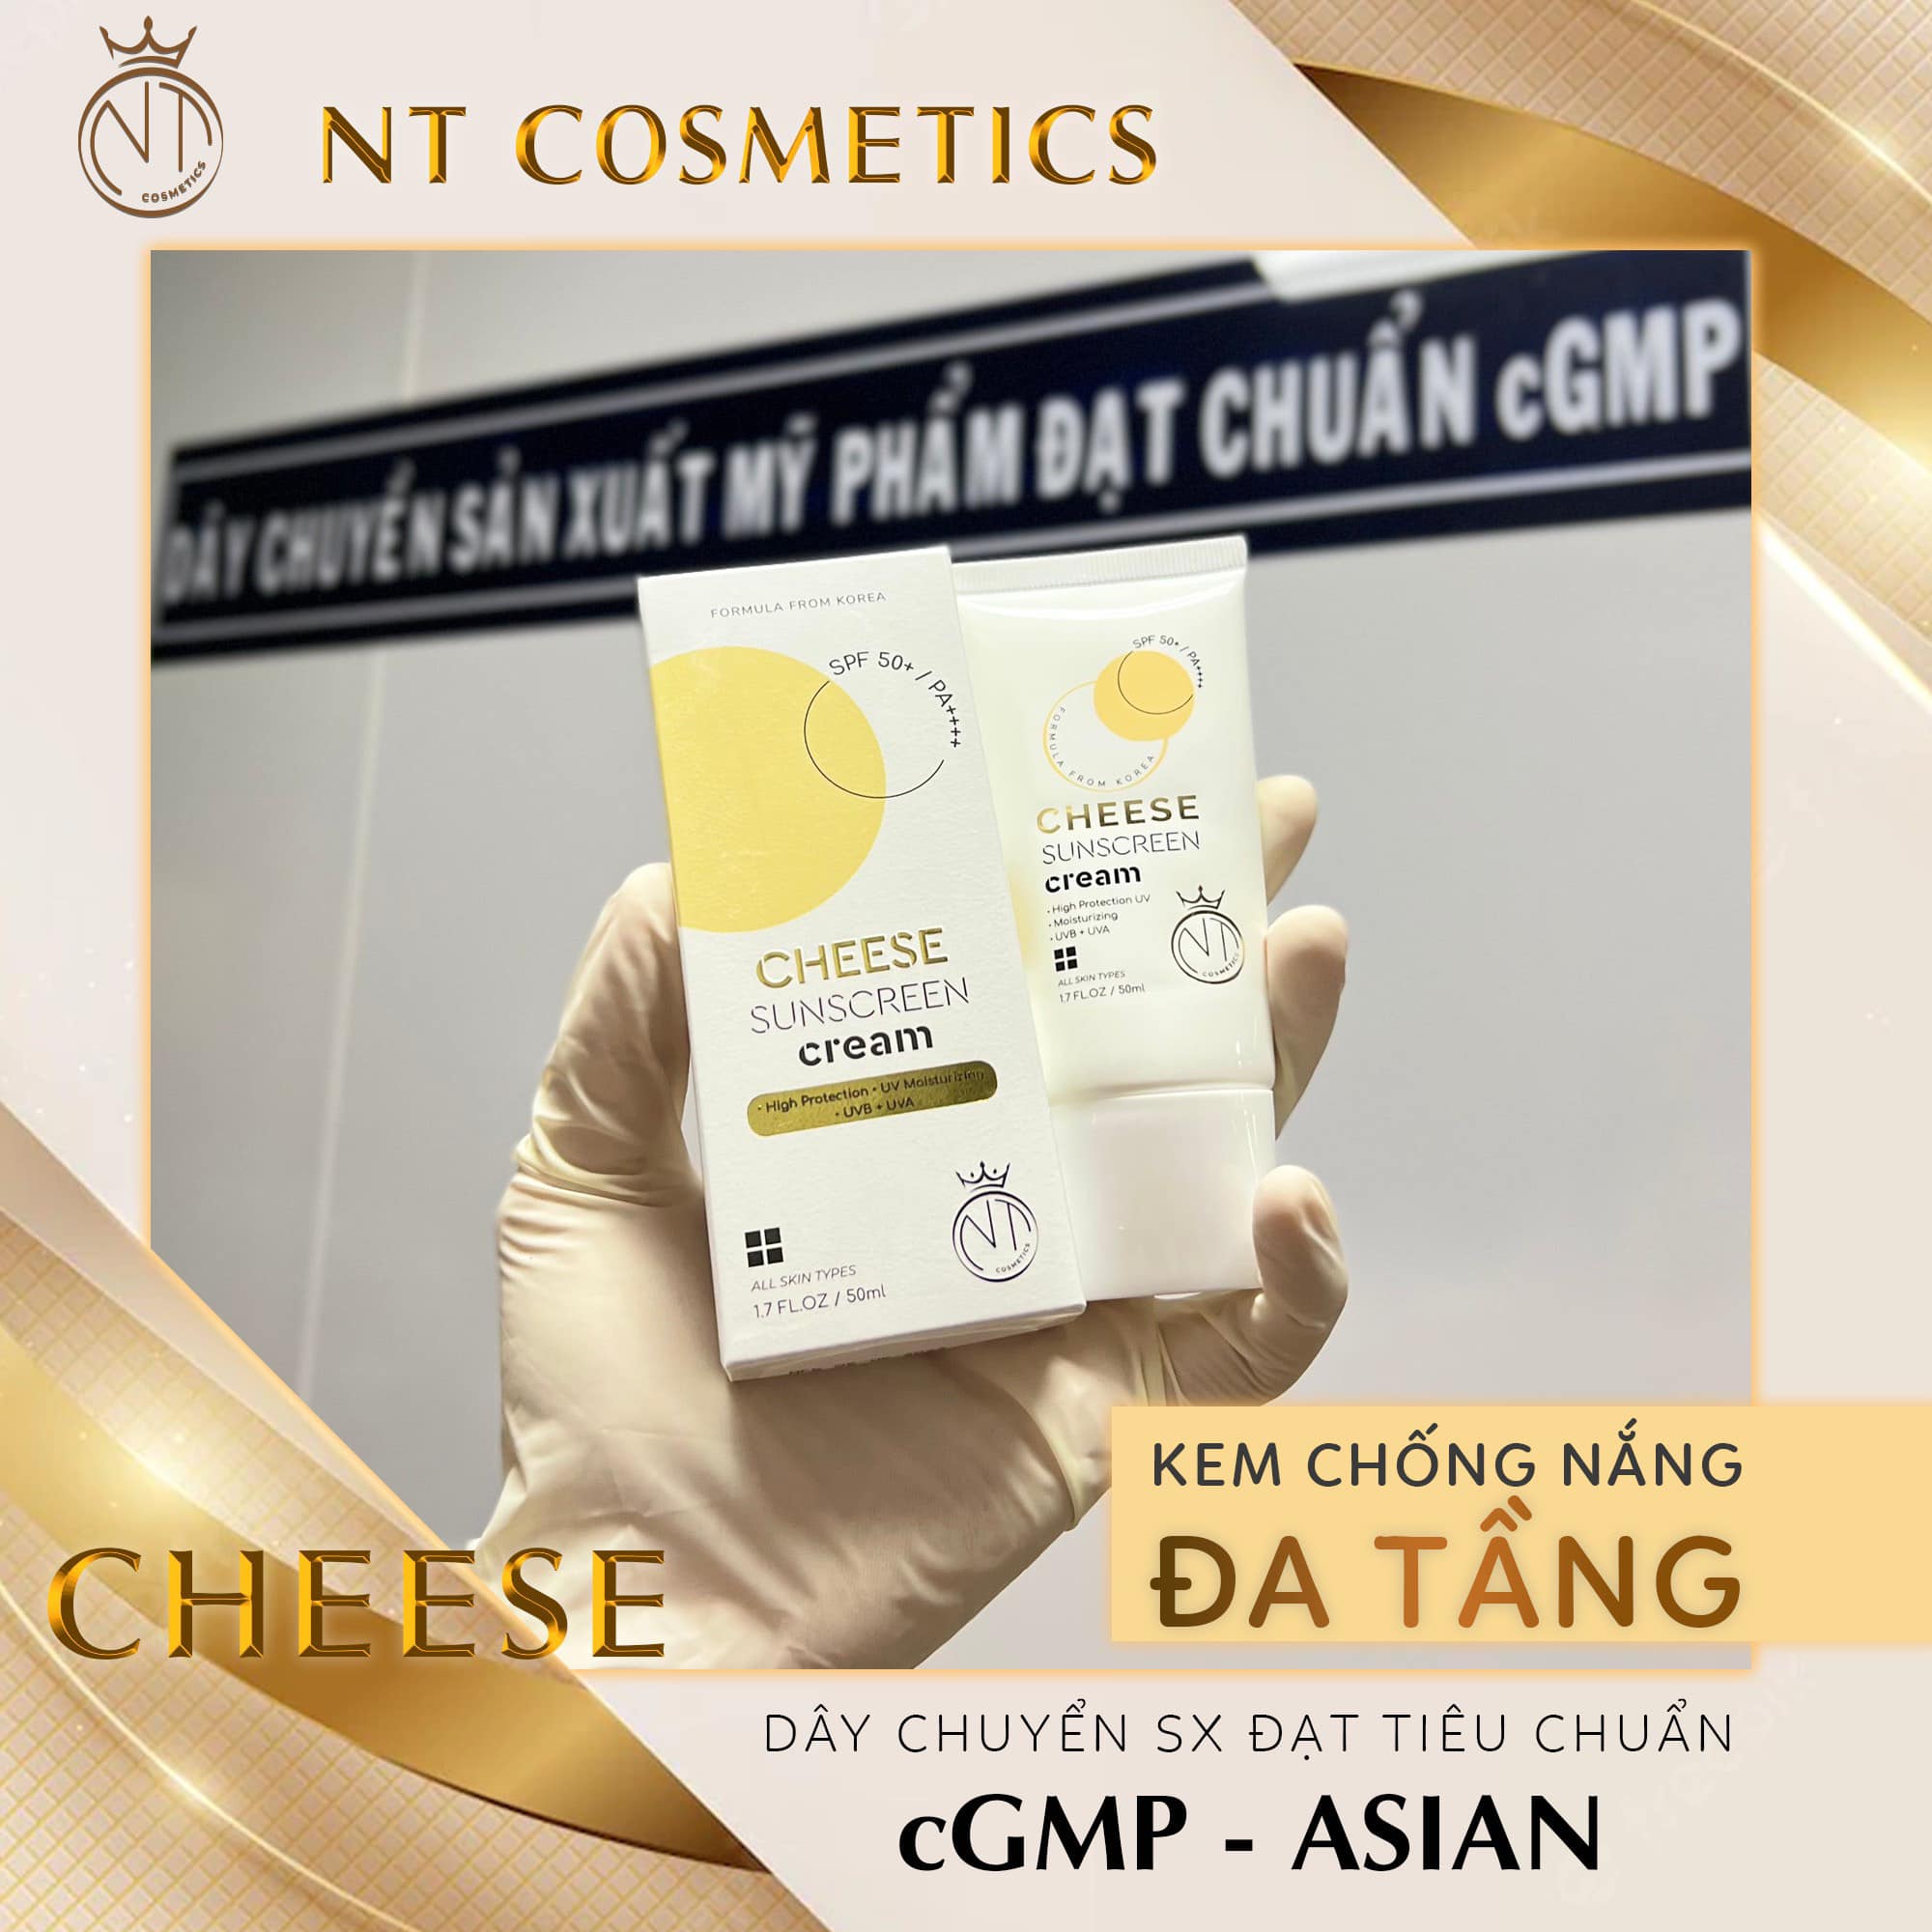 Kem Chống Nắng Cheese Mỹ Phẩm Ngọc Tú NT Cosmetics - 8936206760078